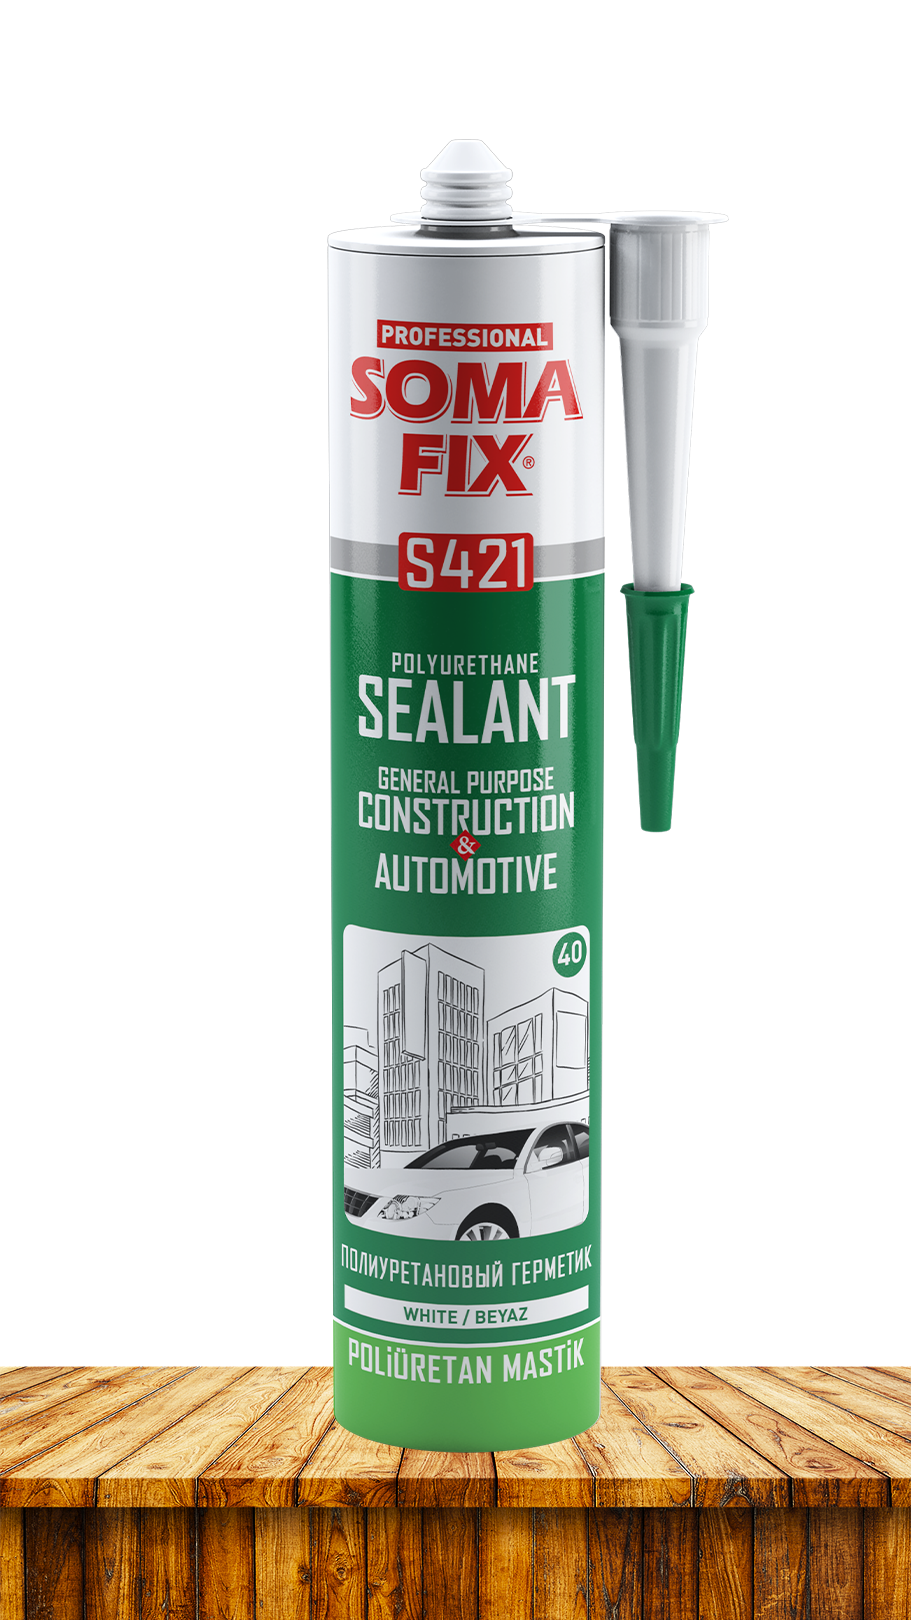 Герметик SOMA FIX полиуретановый, общестроительный (белый), 280 мл S421. Купить от производителя по отличной цене